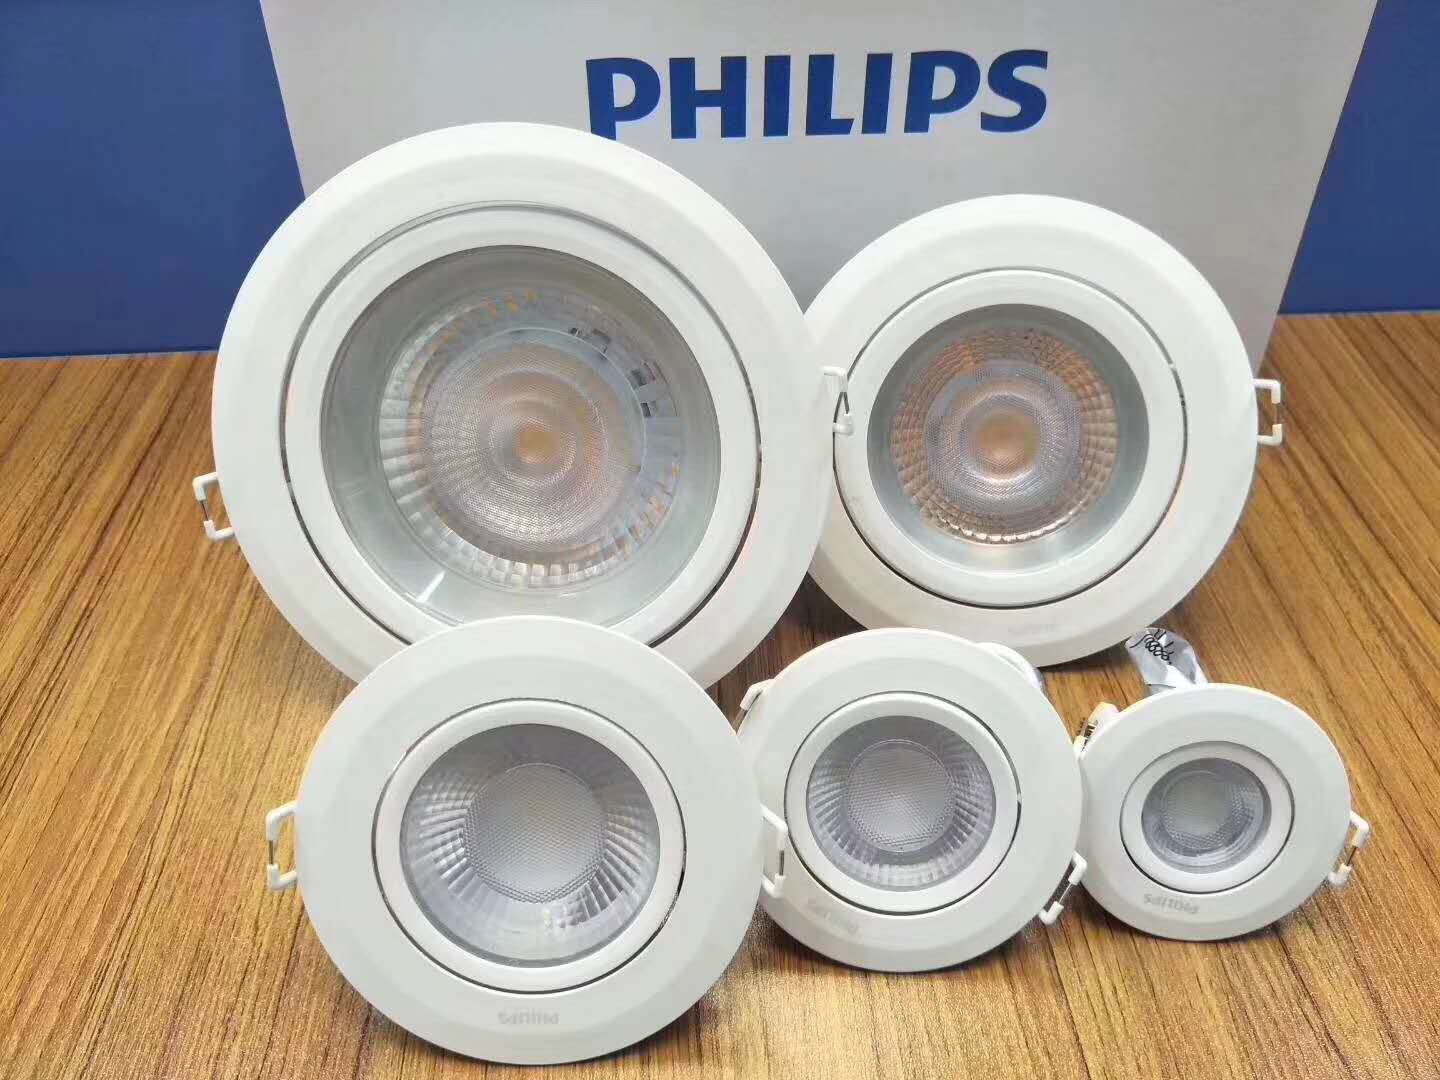 PHILIPS LED Spotlight RS100B LED30 840 27W 220V D150 WB CN 929001982510